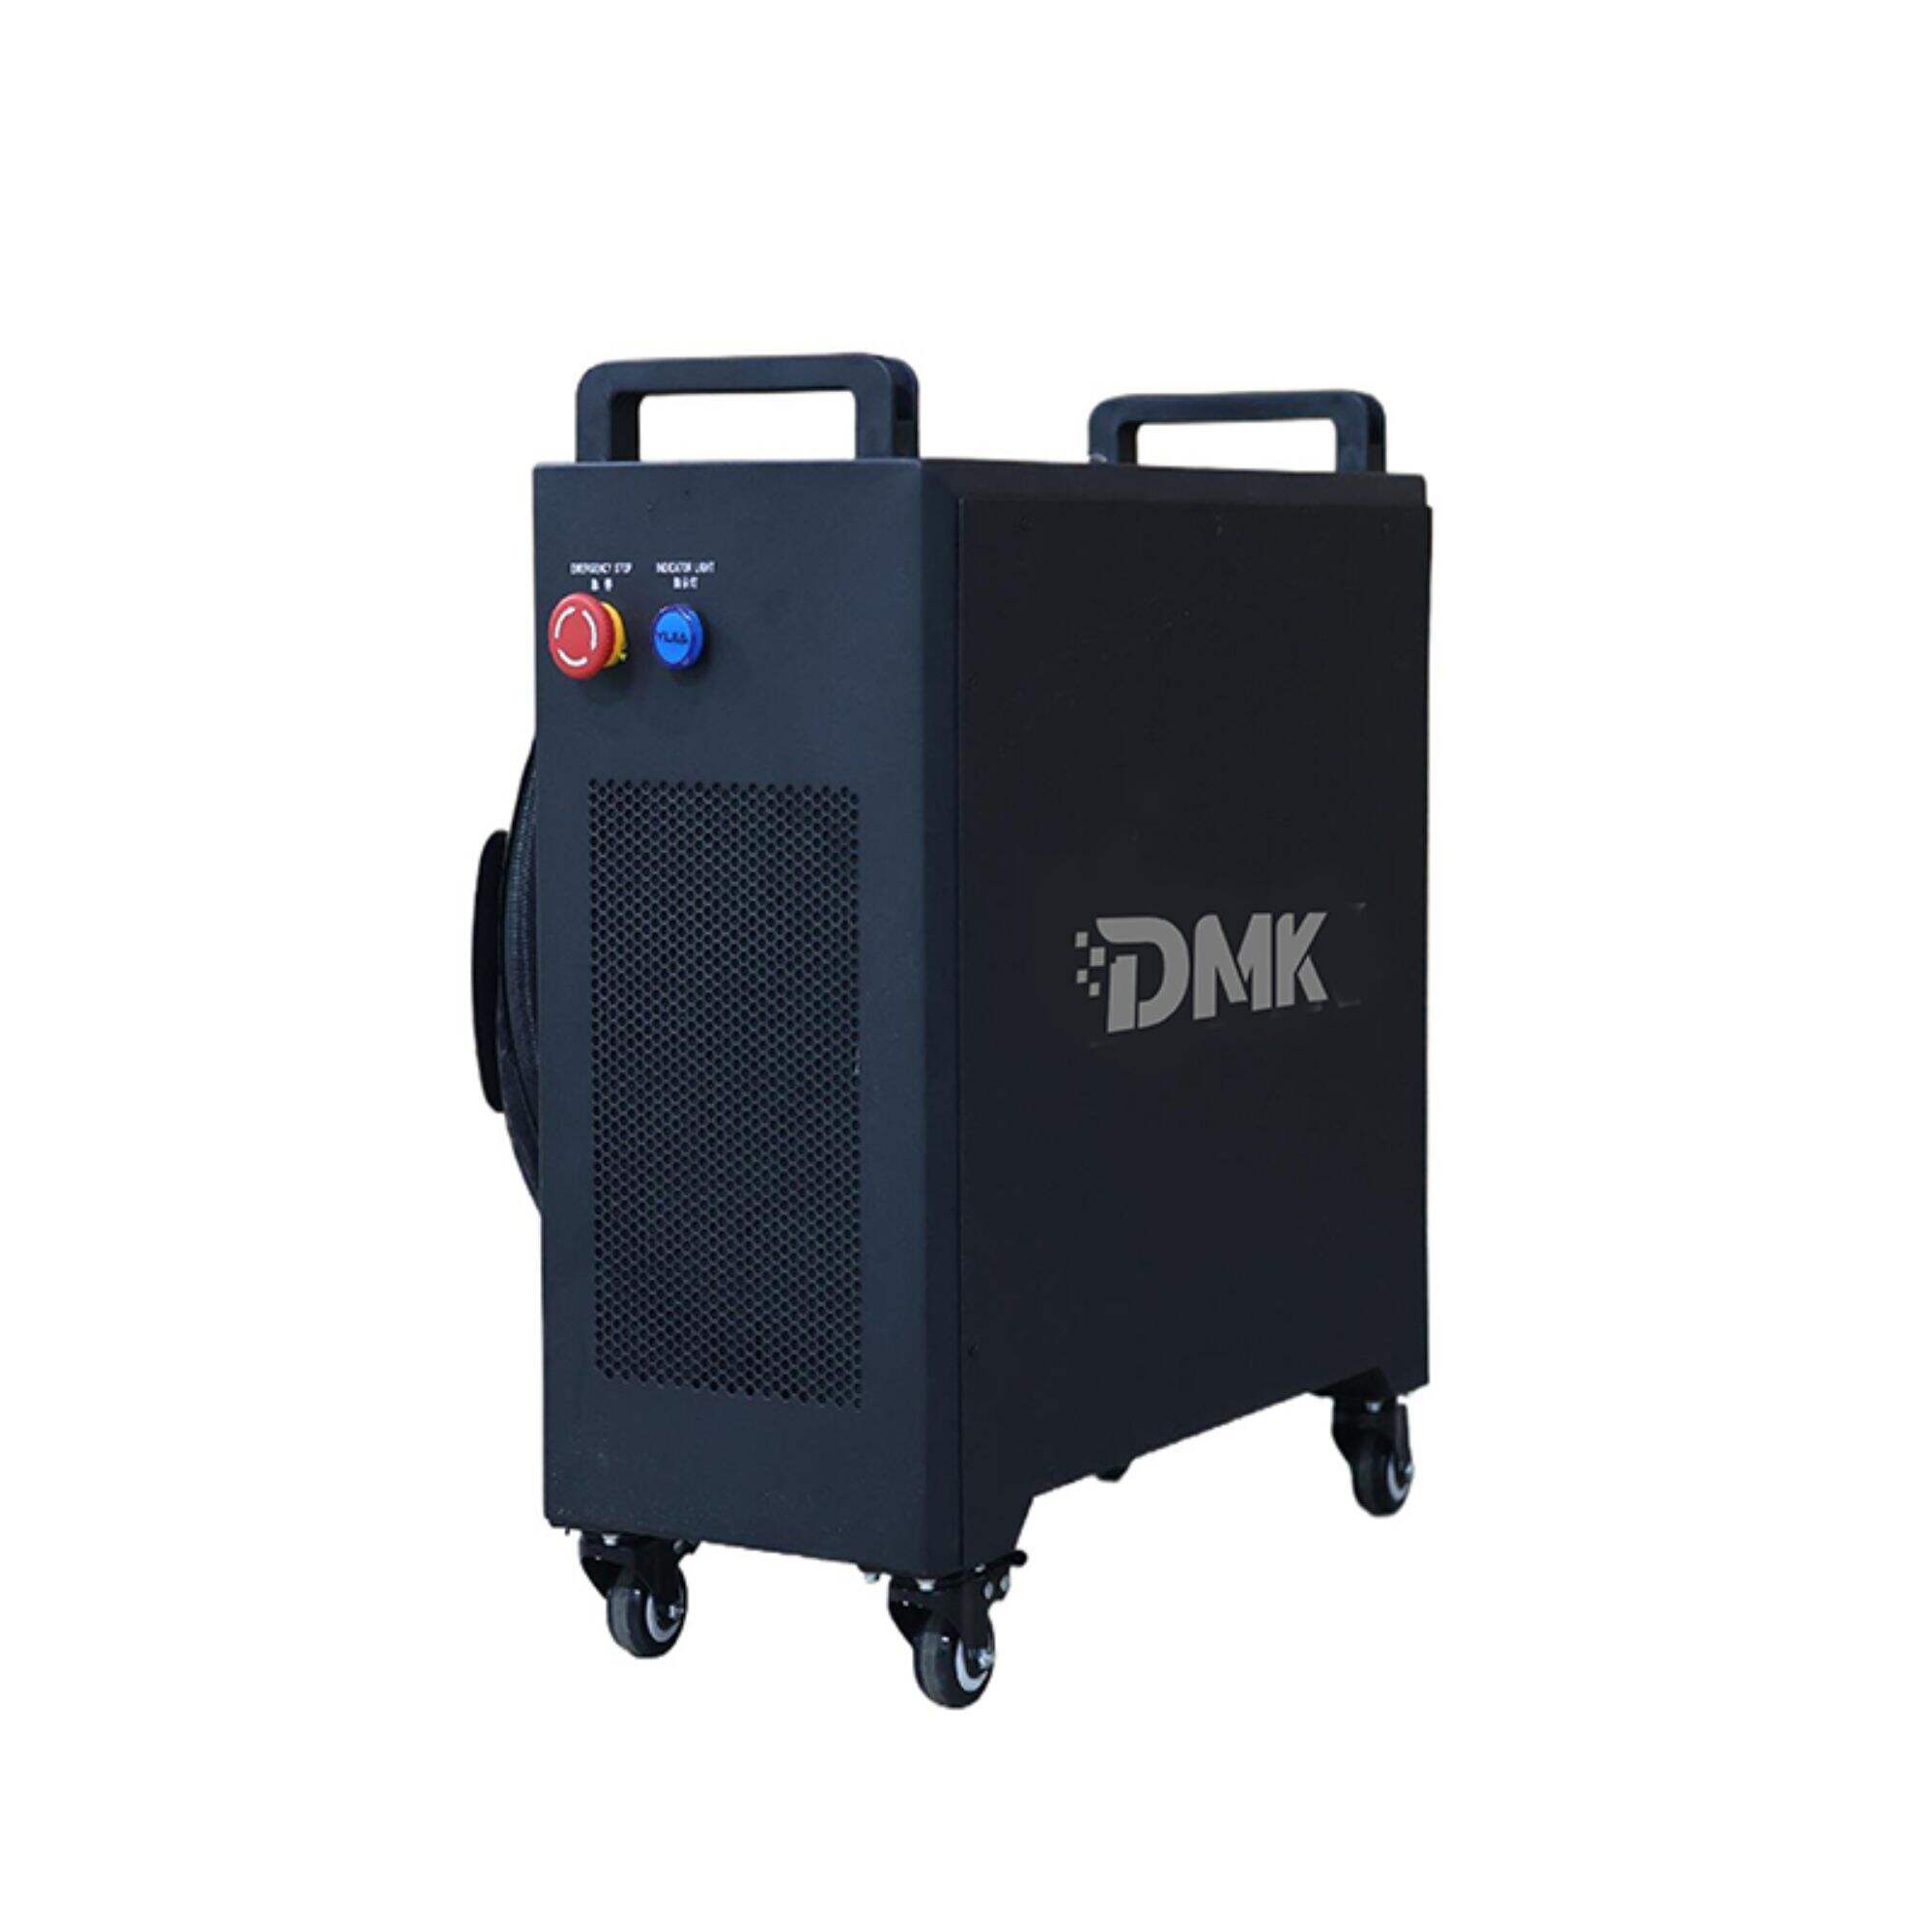 DMK 1500W 휴대용 핸드헬드 파이버 레이저 용접기 미니 공냉식 레이저 용접기